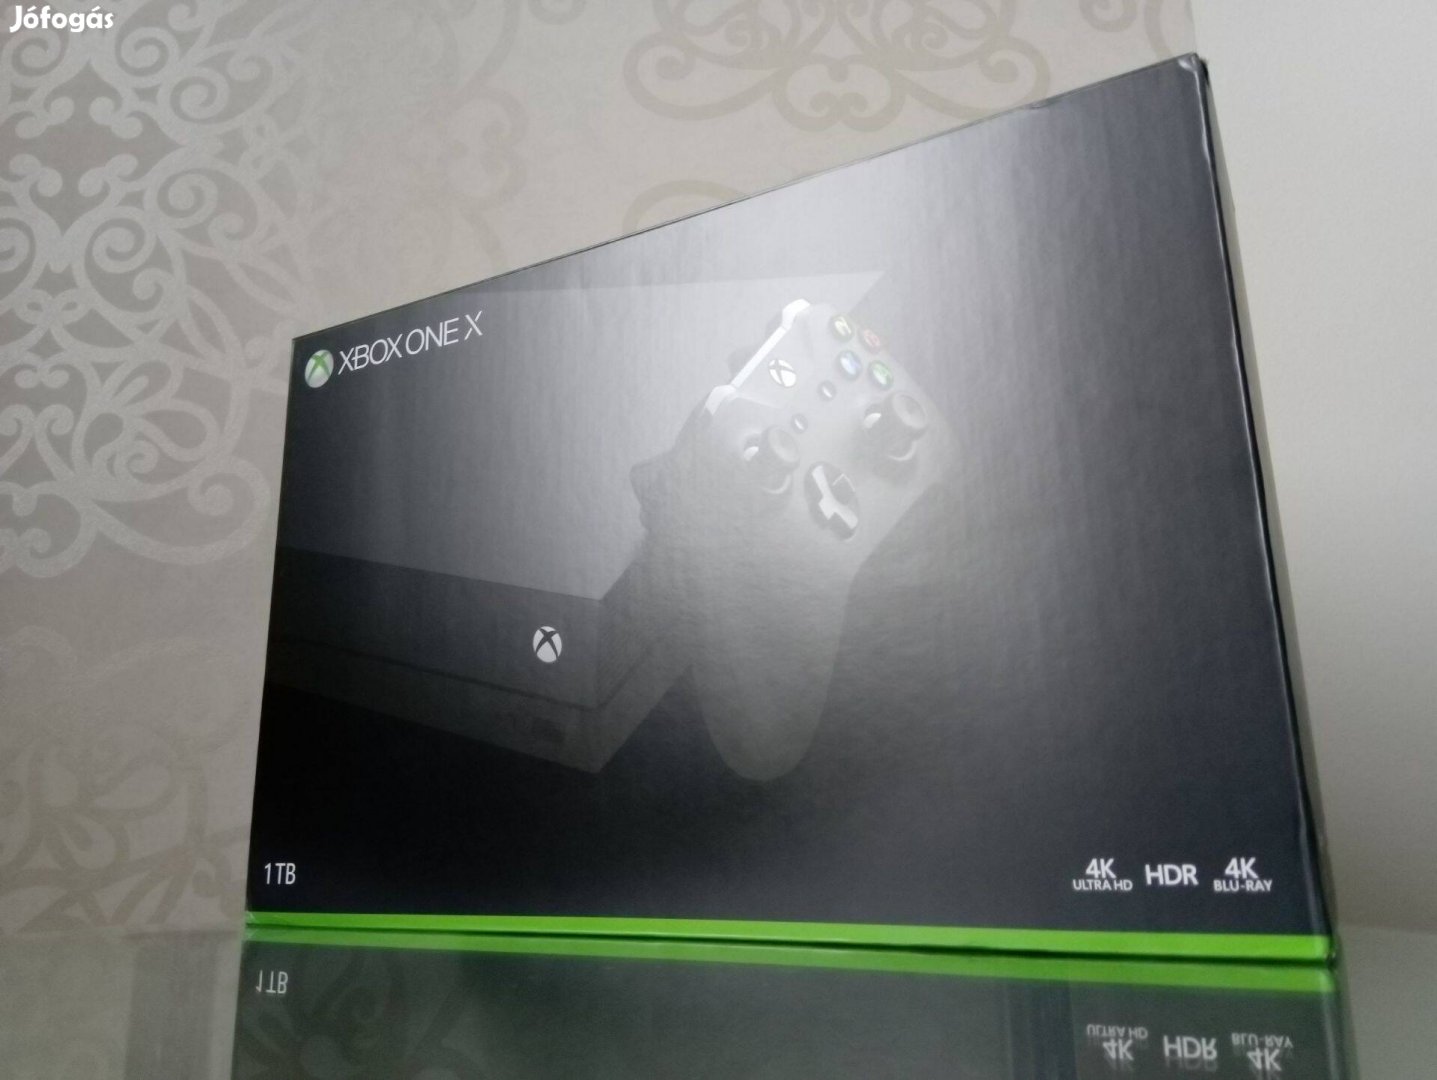 Xbox One X komplett dobozos 1TB, 4K, HDR, Blu-Ray akár ajándékba!